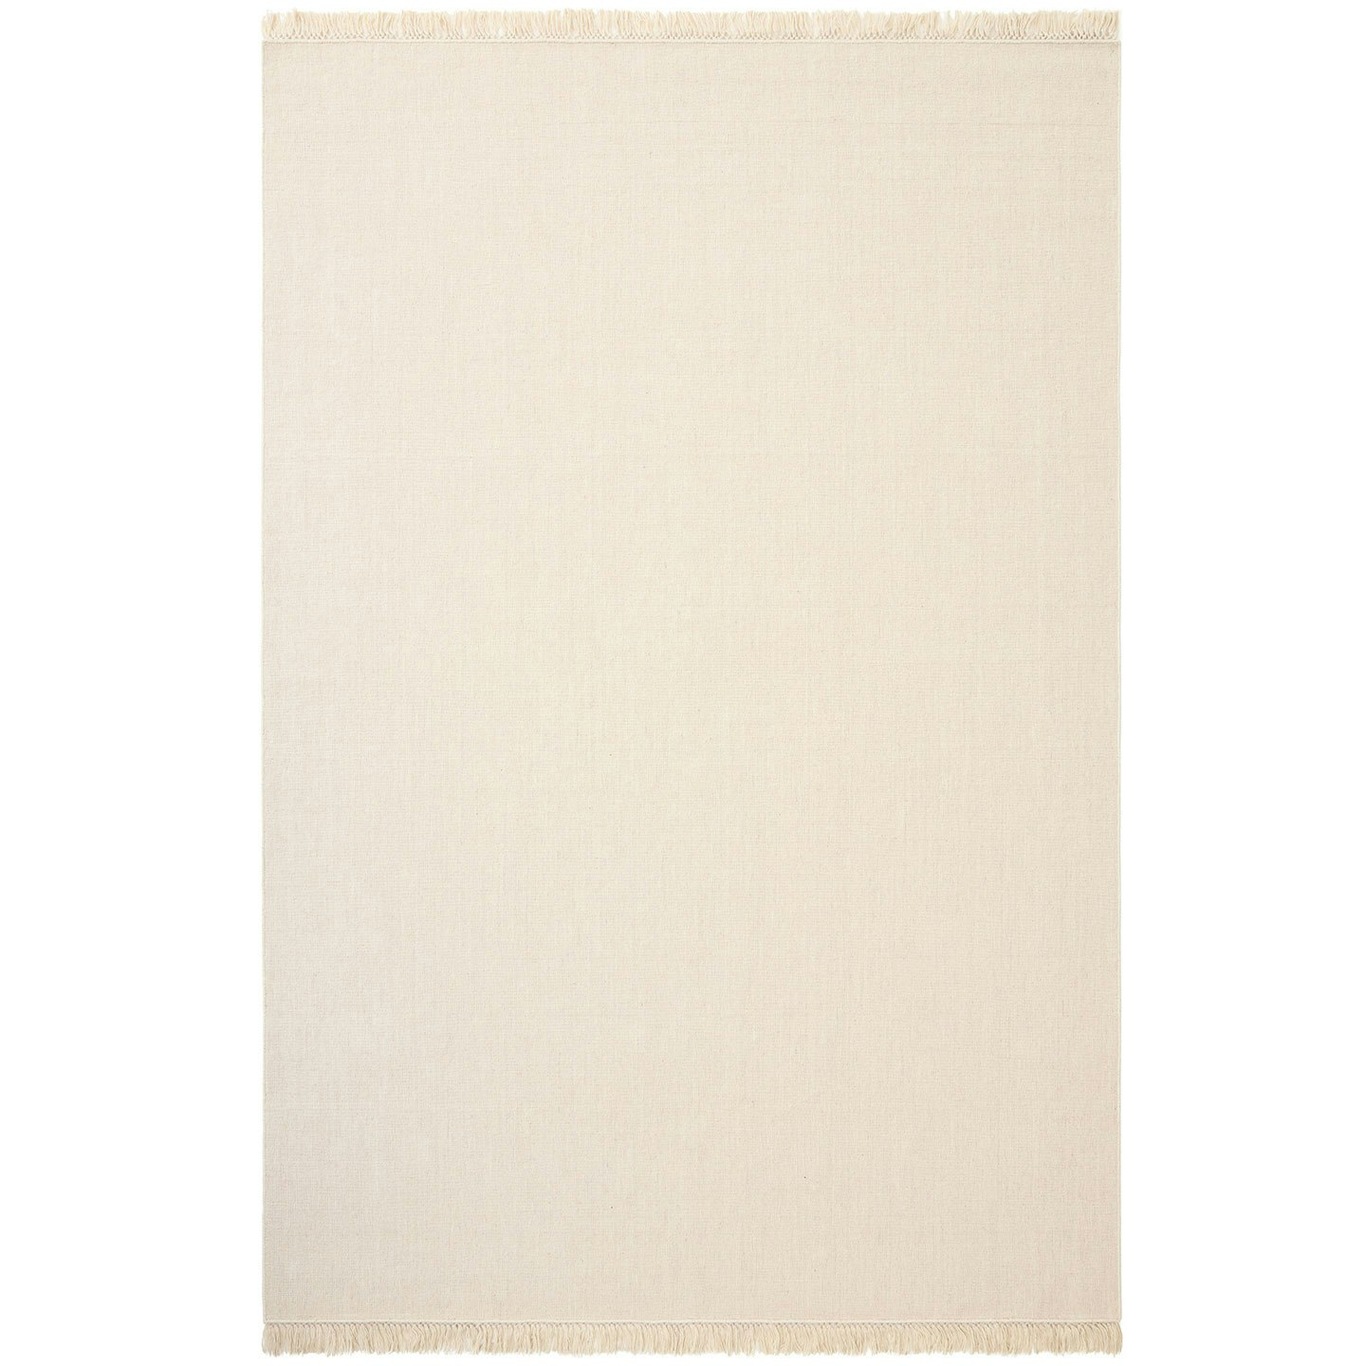 Nanda Teppe Off-white, 200x300 cm